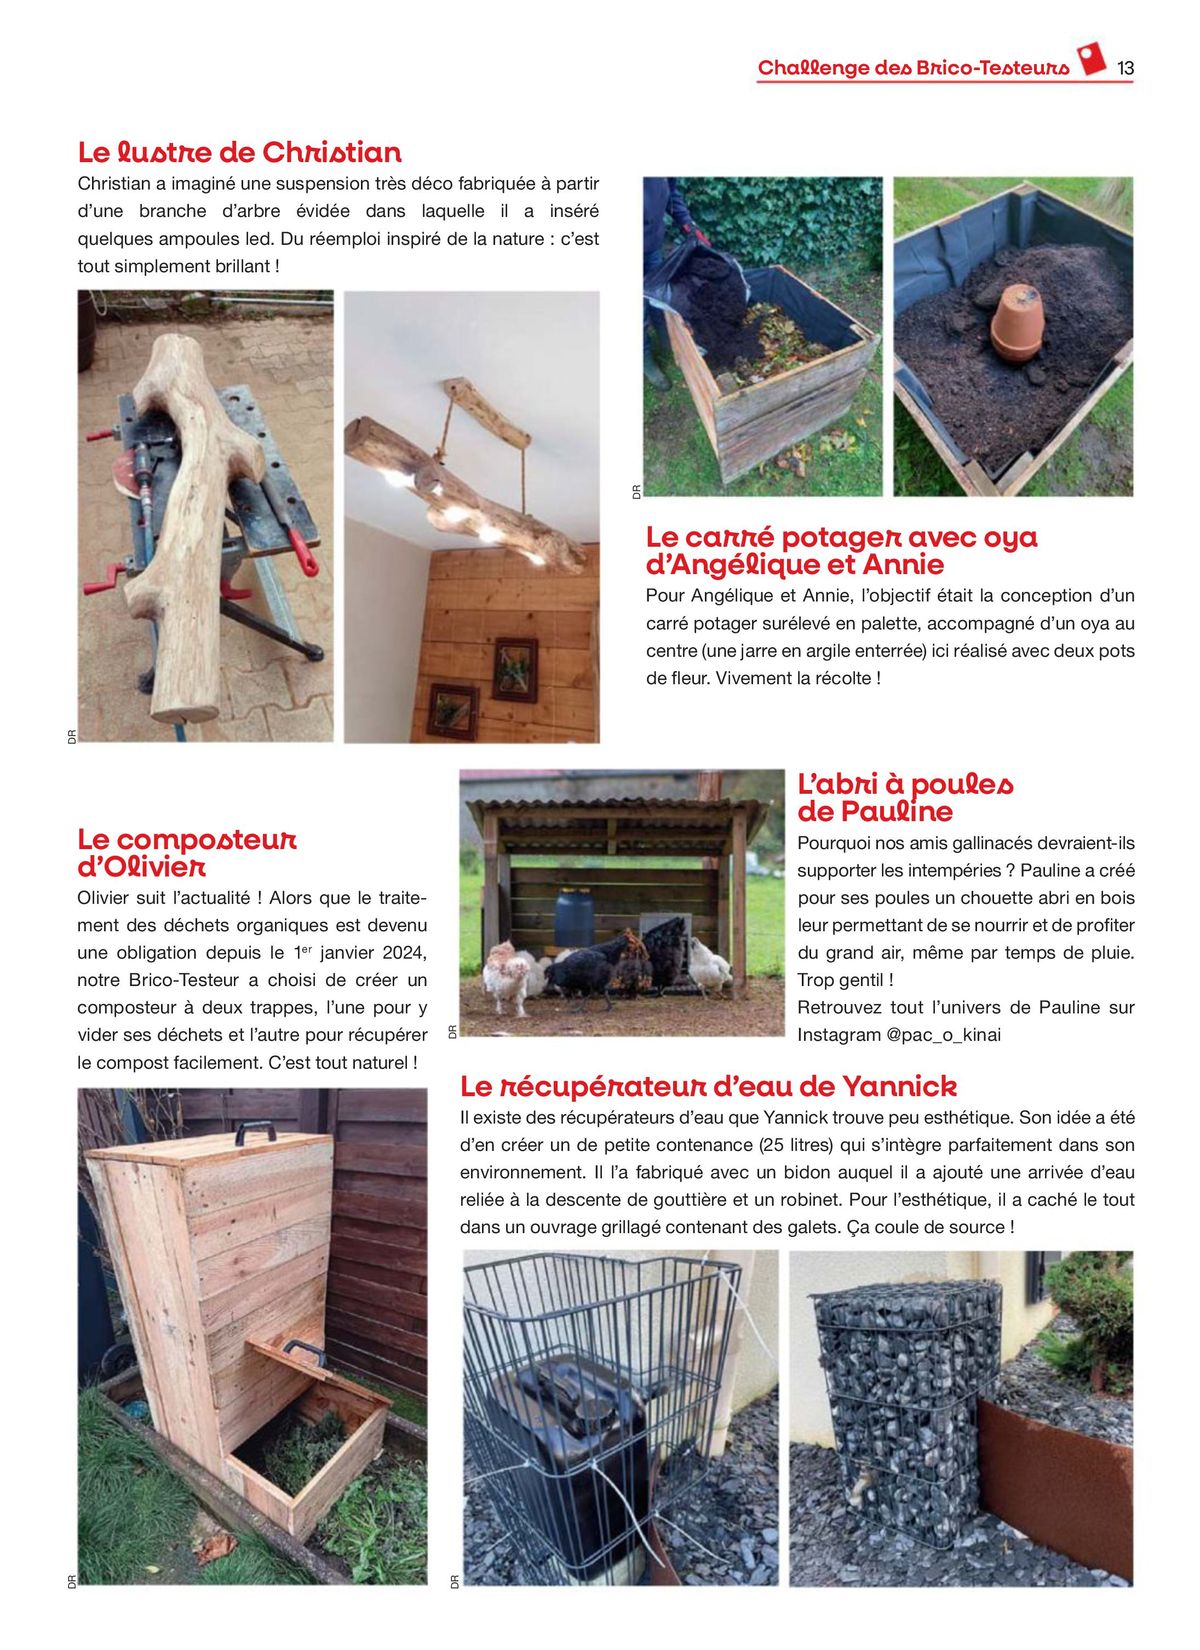 Catalogue Feuilletez Entre Voisins, page 00013